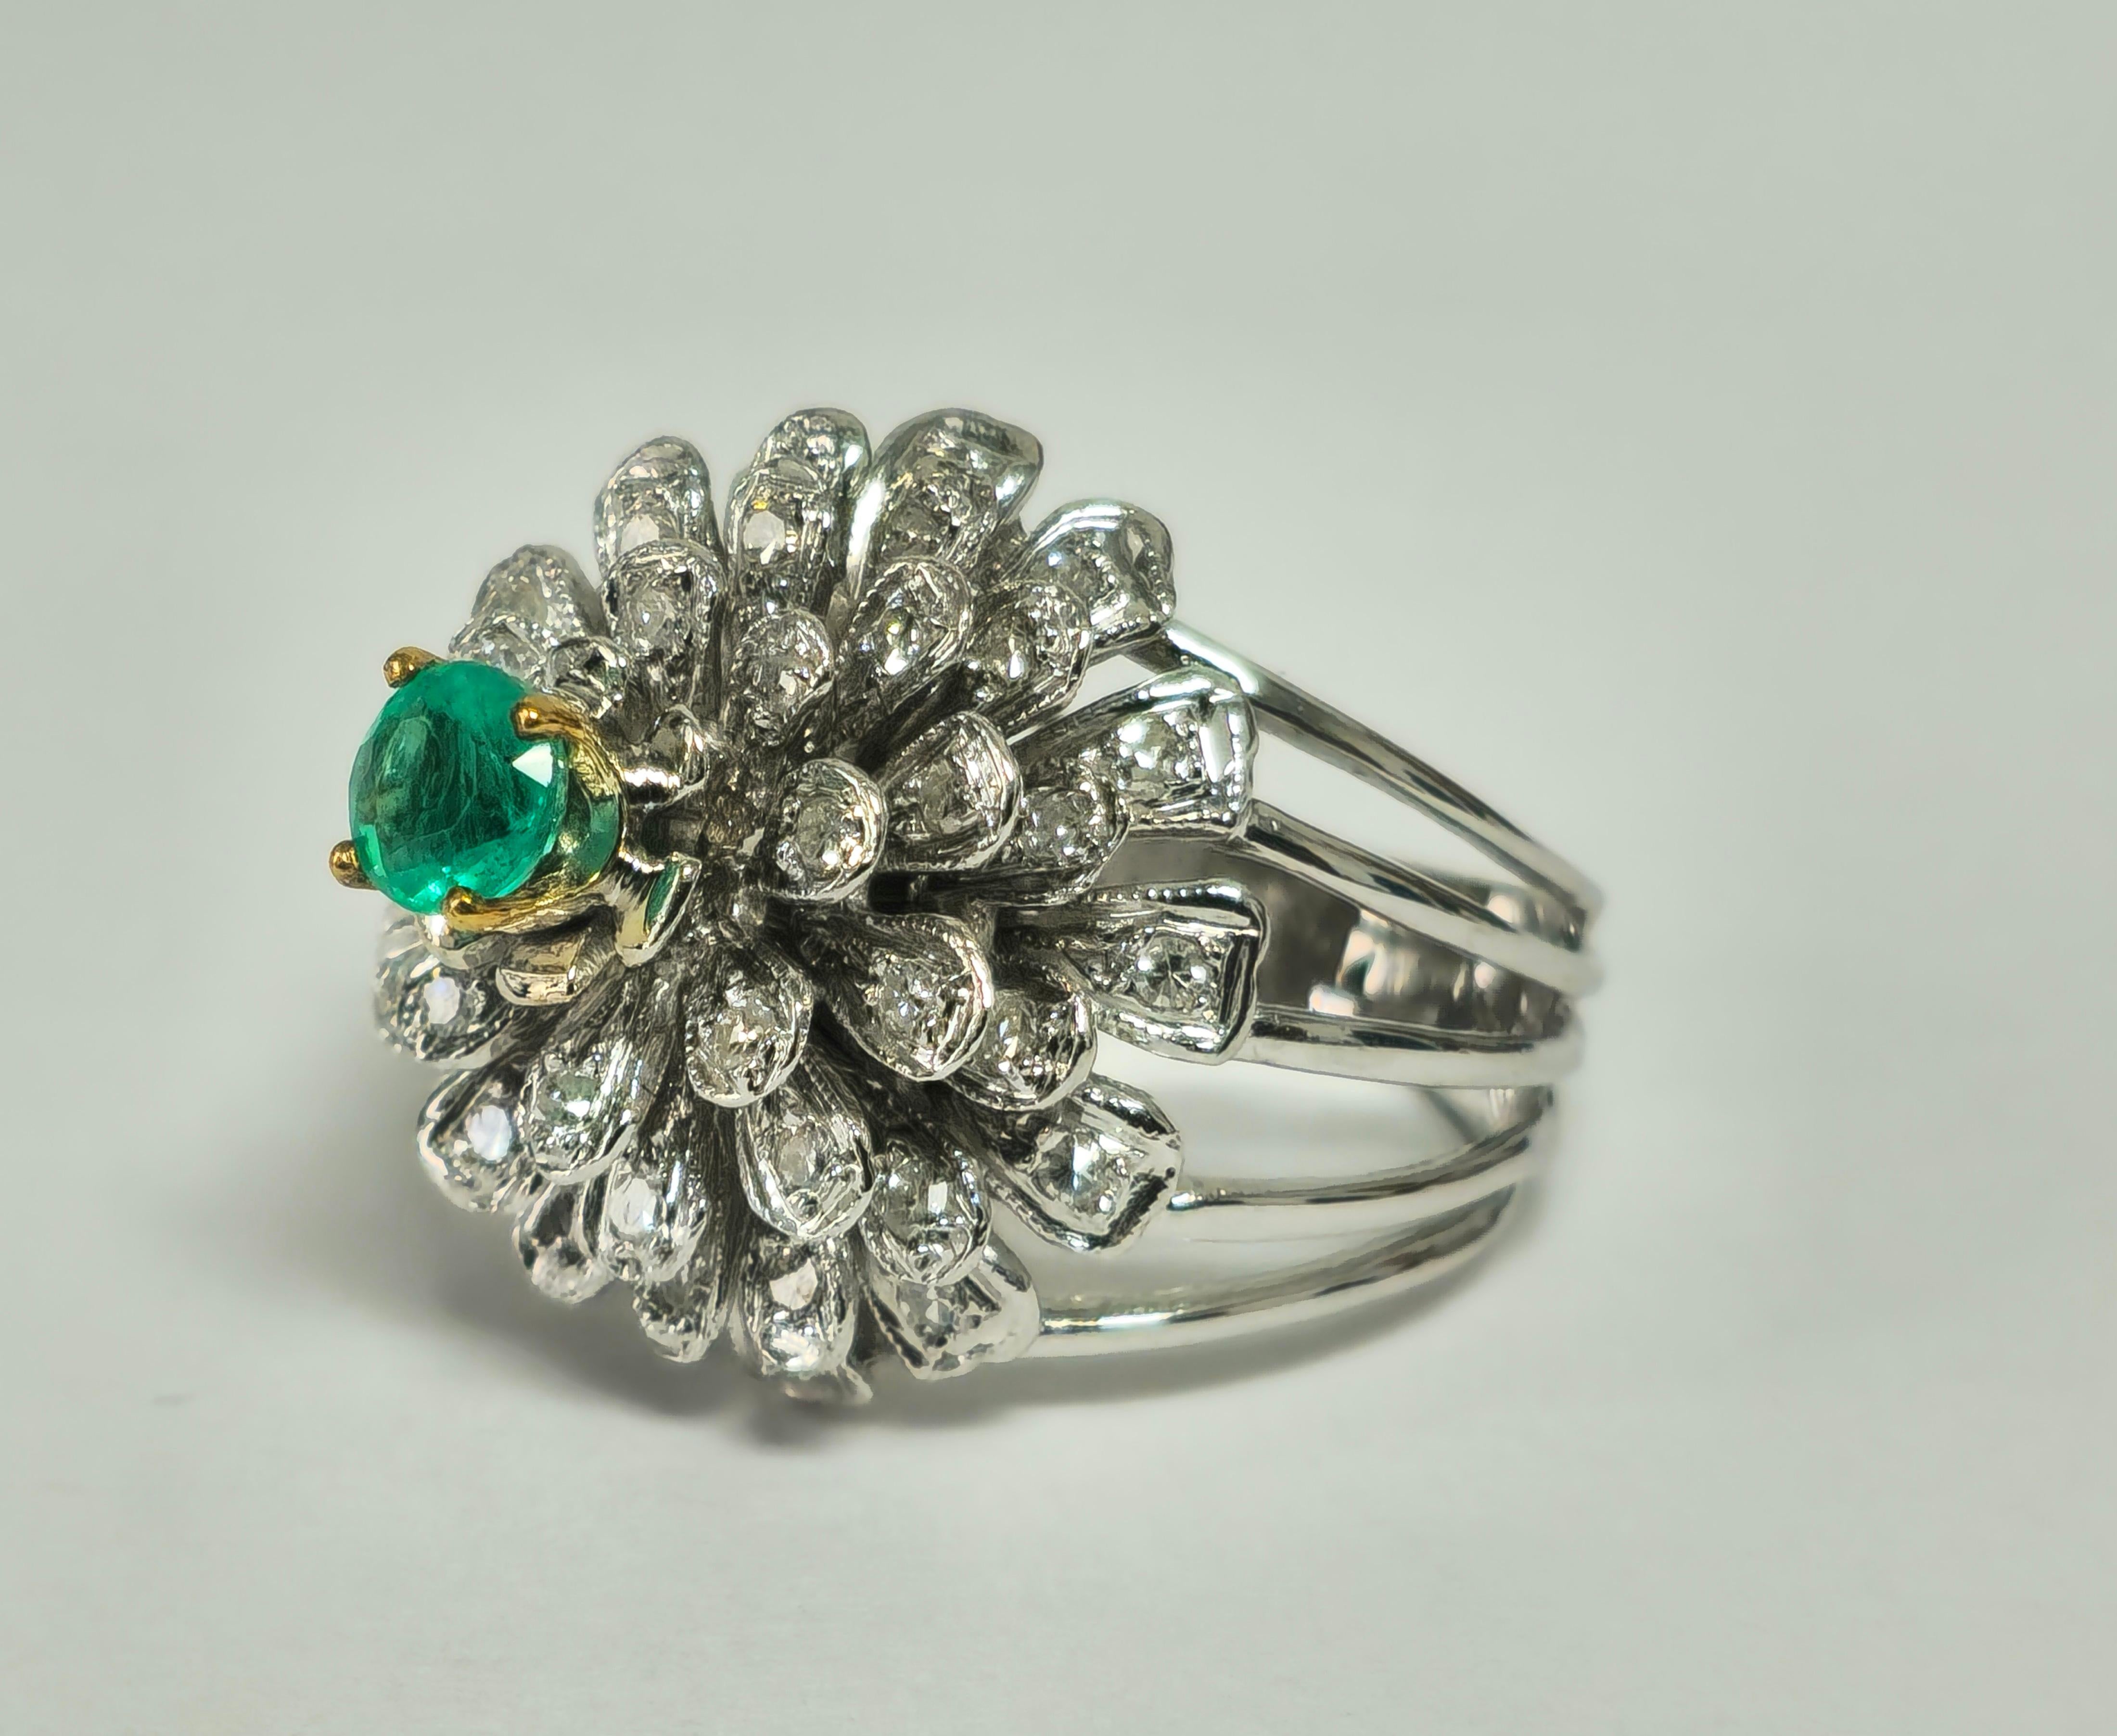 Sein Herzstück ist ein faszinierender kolumbianischer Smaragd, der Wachstum und Wohlstand symbolisiert. Er ist umgeben von einem Halo aus seitlichen Diamanten, die alle eine tadellose Reinheit und Farbe aufweisen. Das exquisite Blumen- und